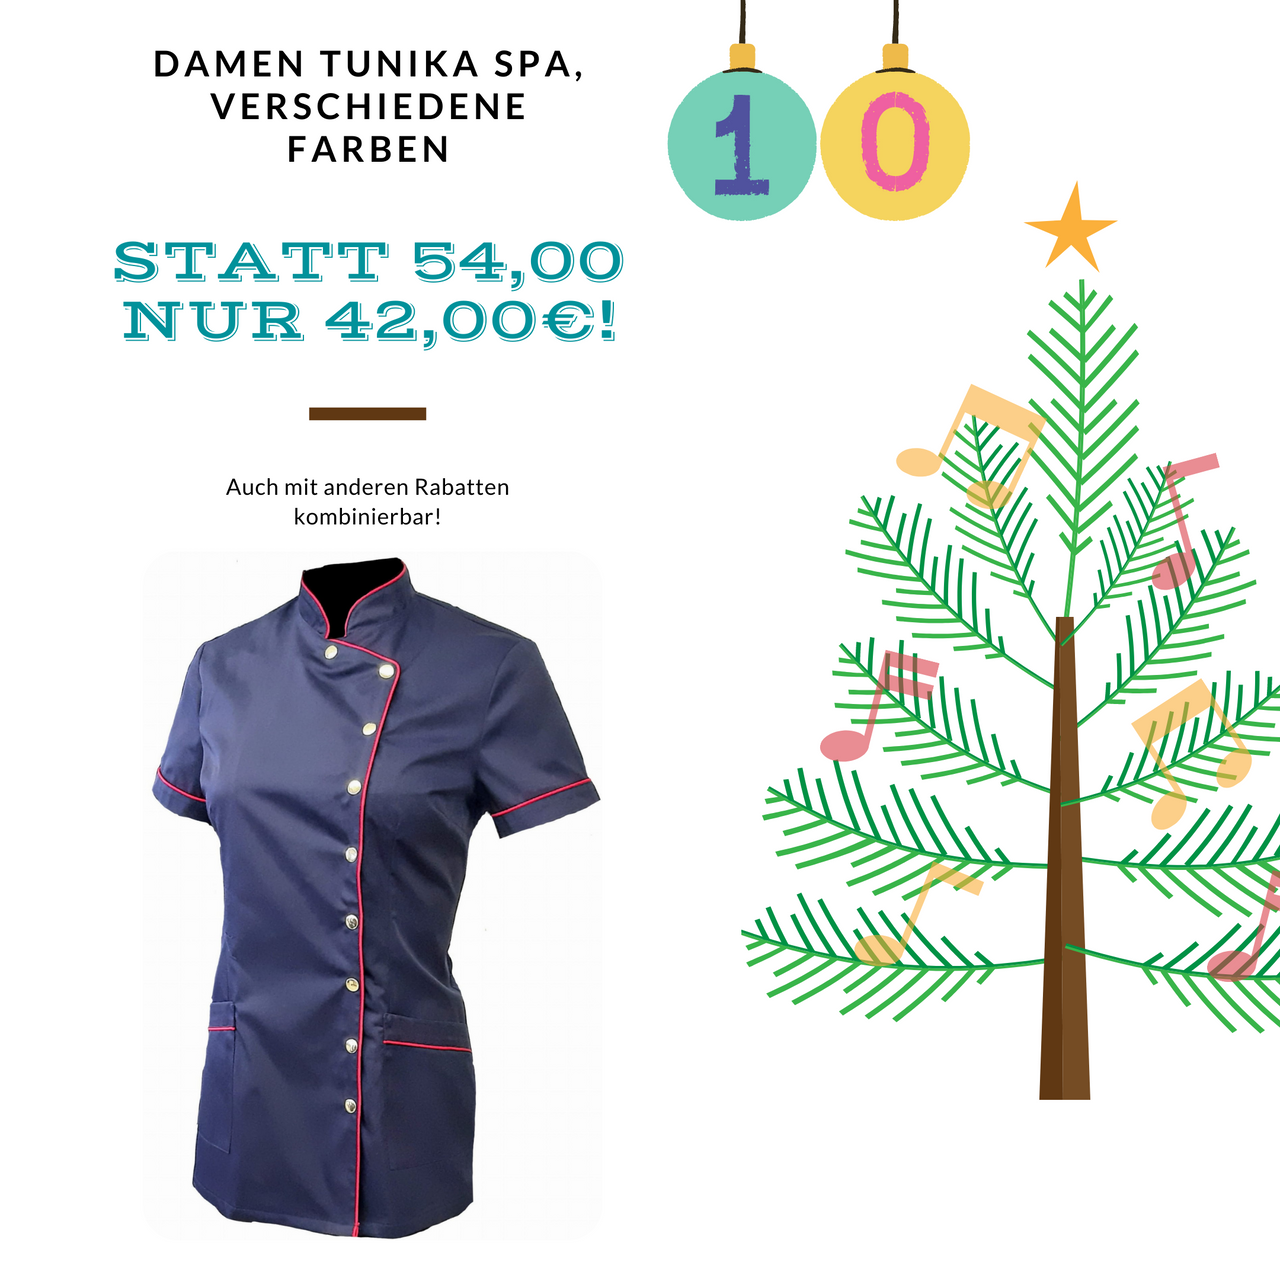 Ein Bild mit Weihnachtsbaum und Damen Tunika Spa, Adventkalender Aktion